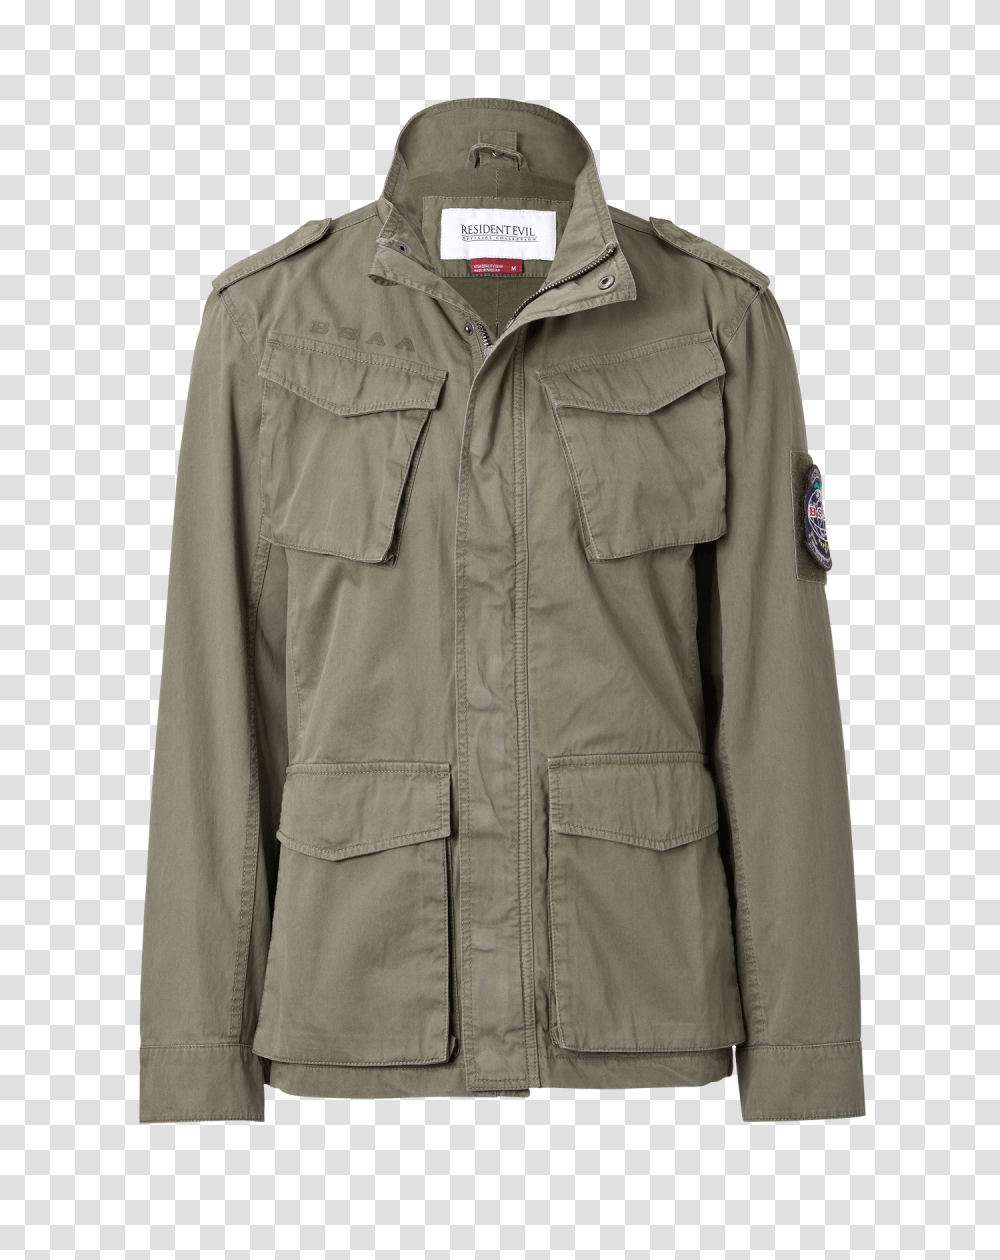 Jacket, Apparel, Coat, Khaki Transparent Png